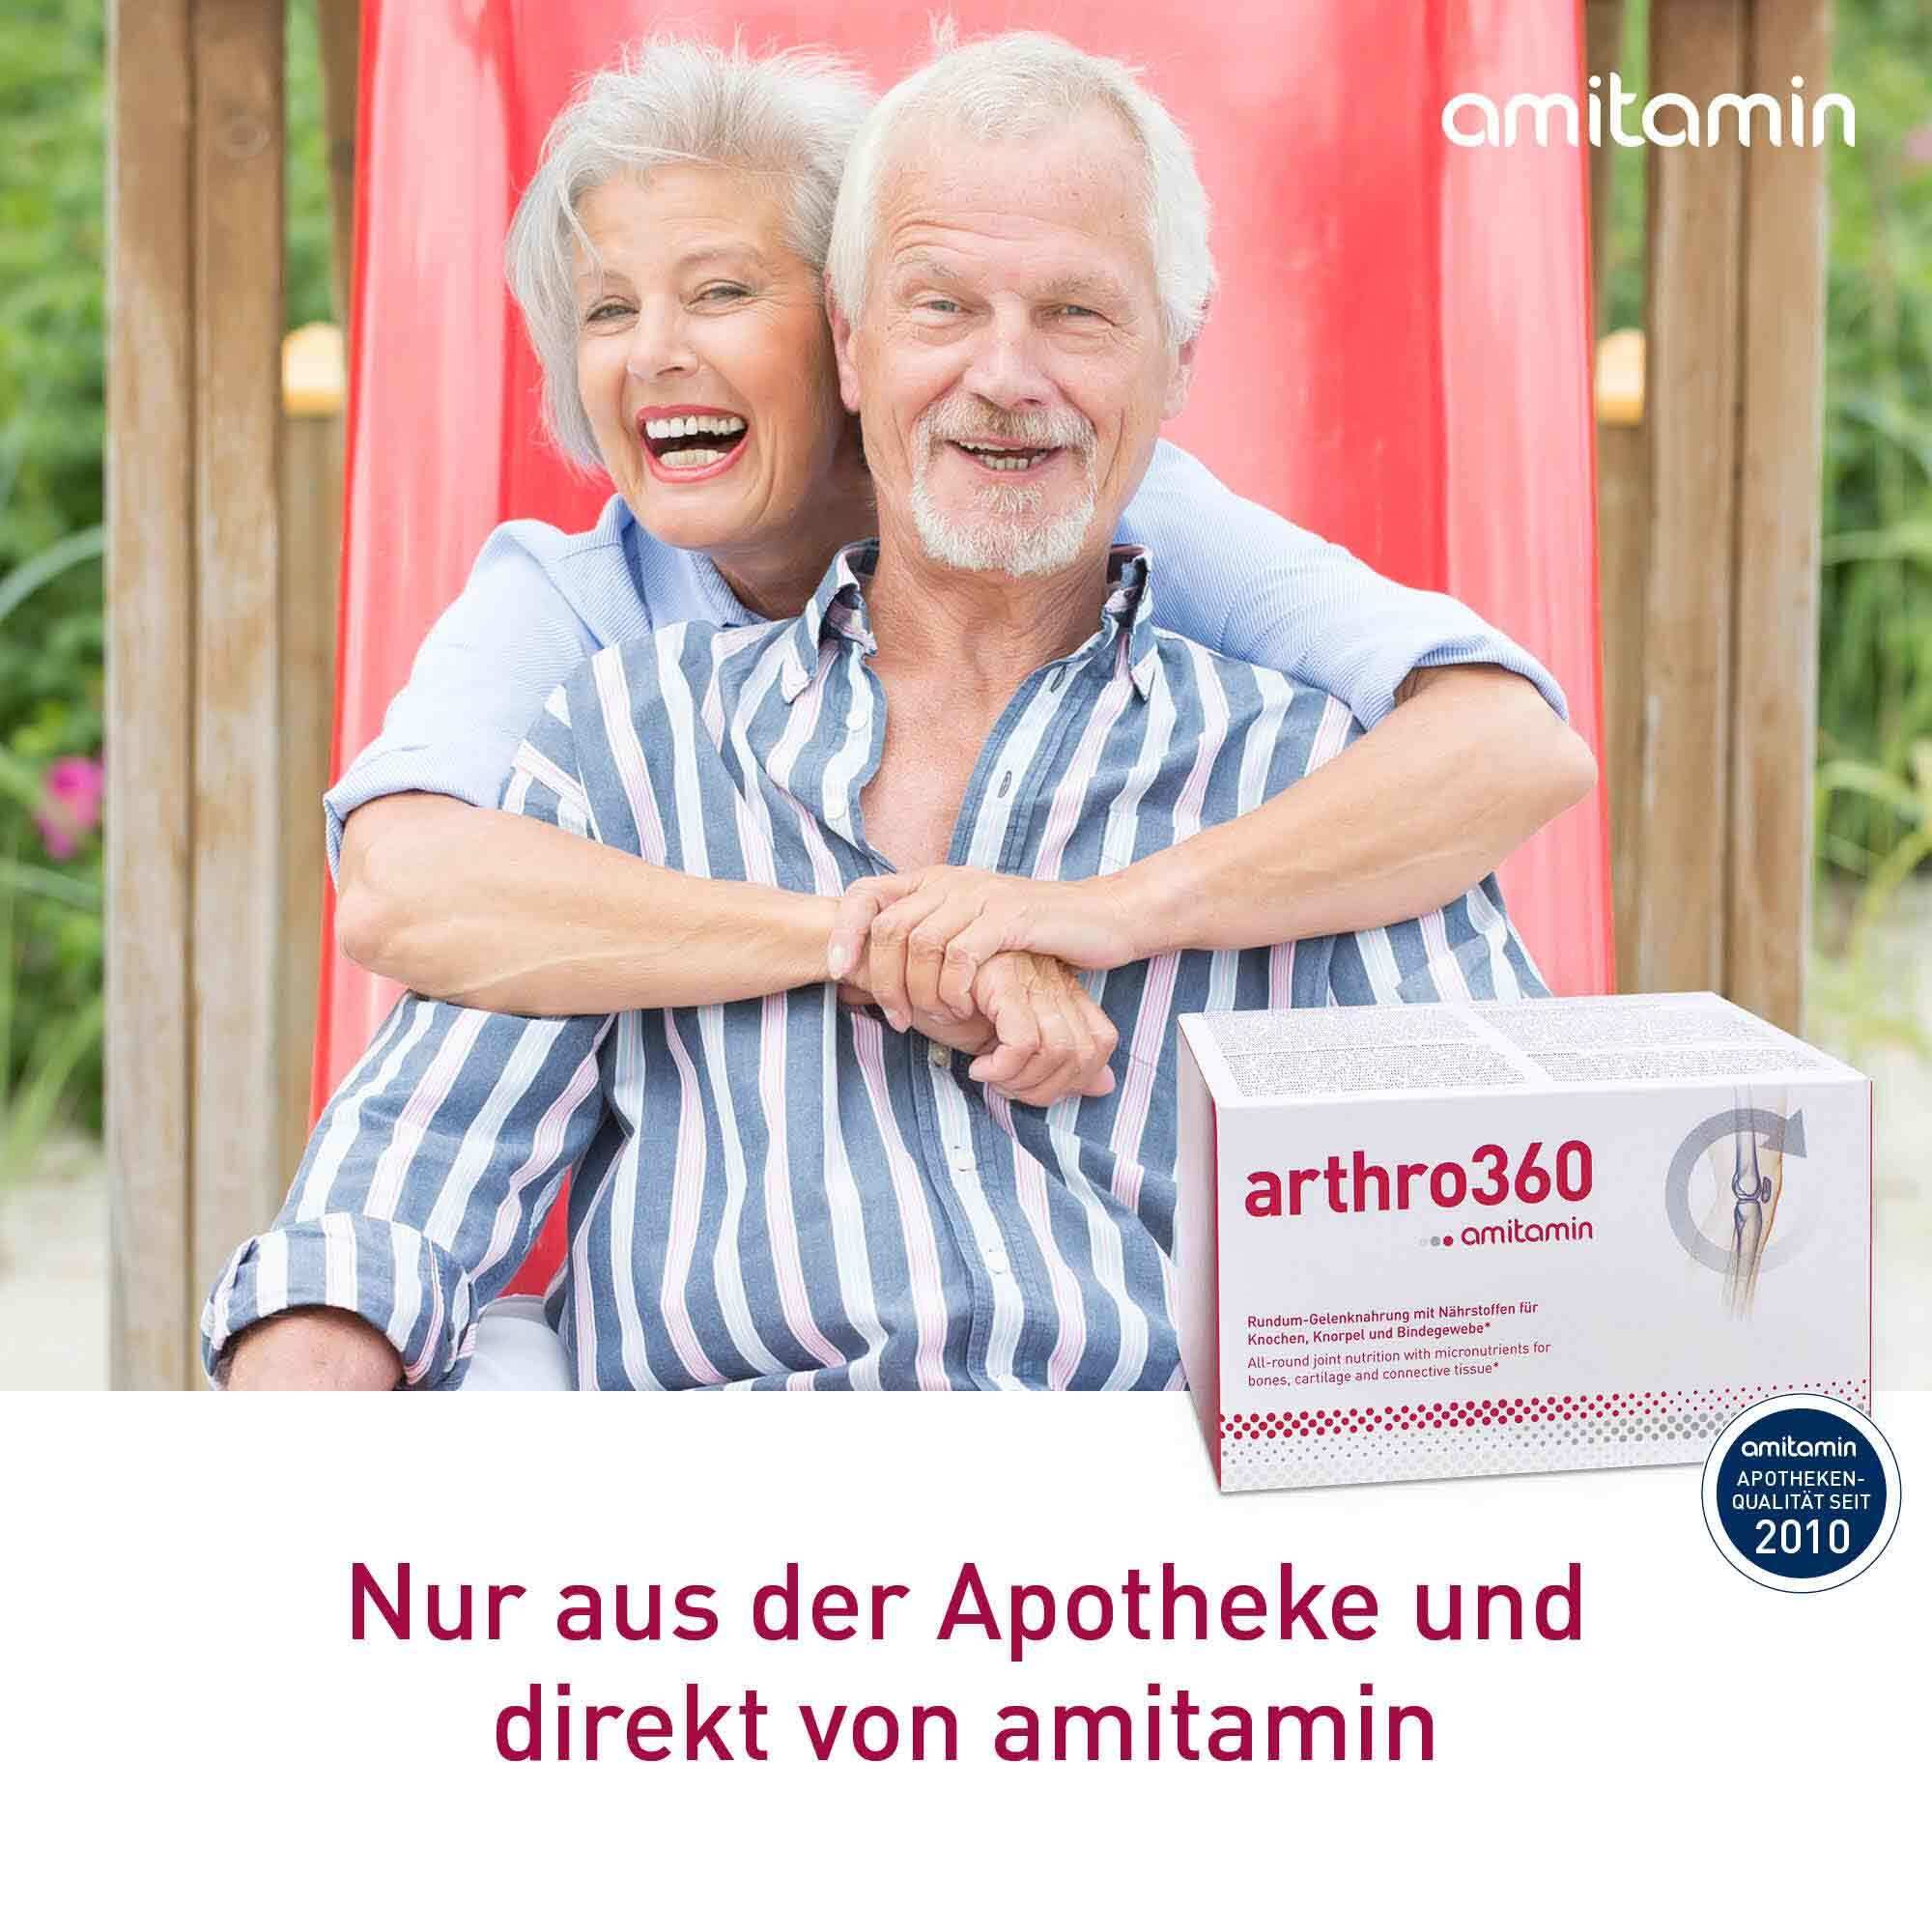 Amitamin® Arthro 360